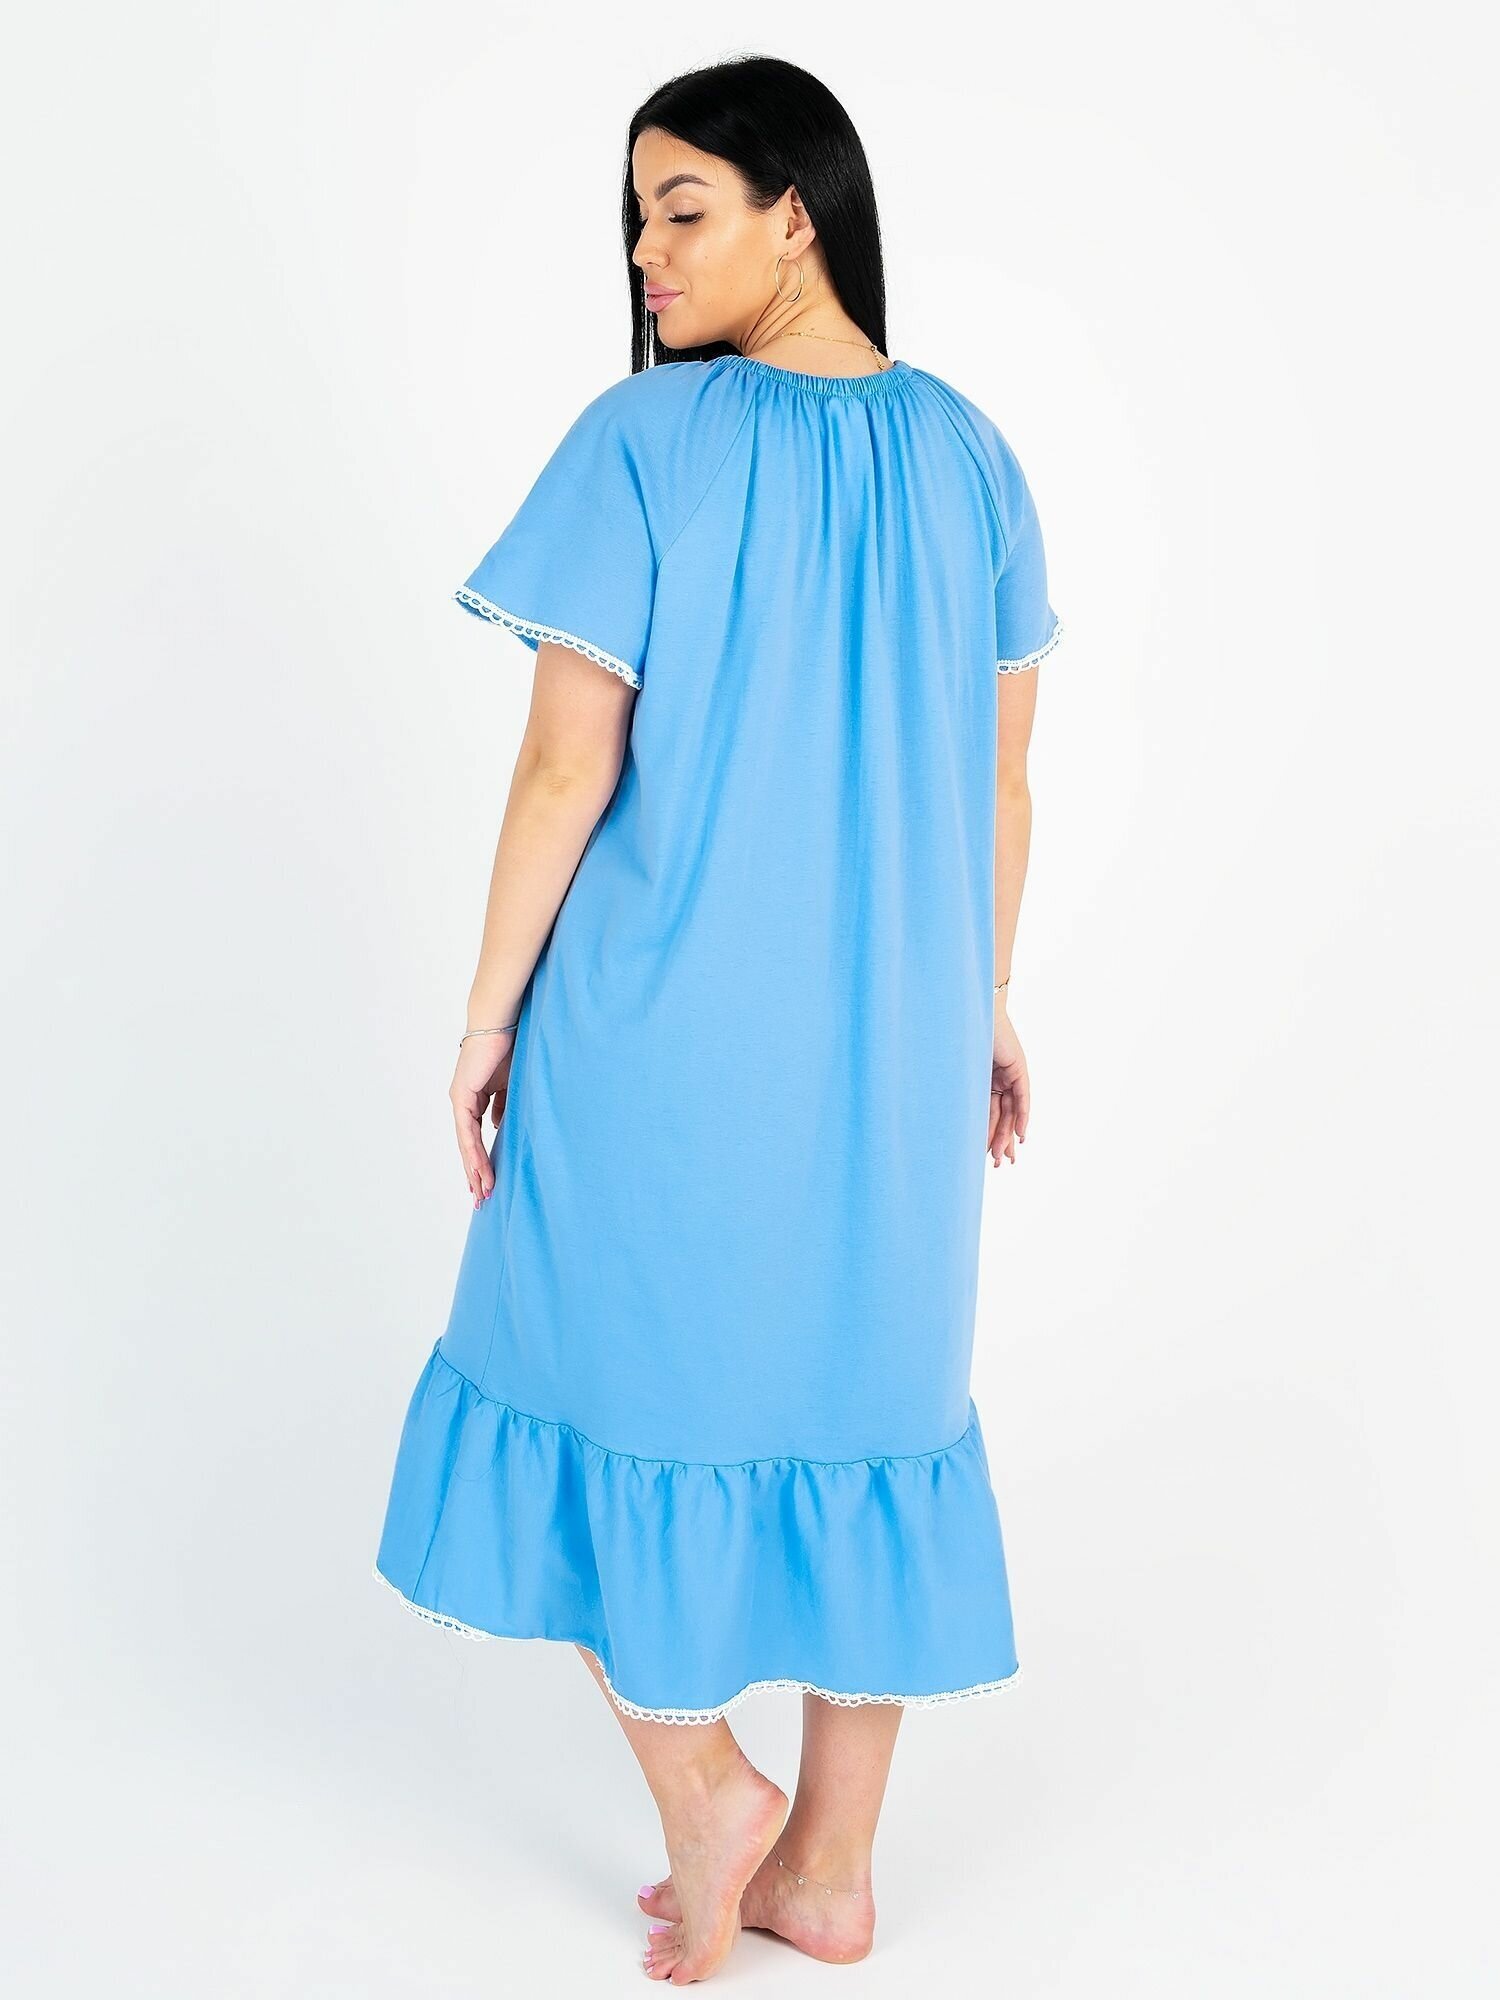 Сорочка ночная женская (50 размер) - фотография № 15